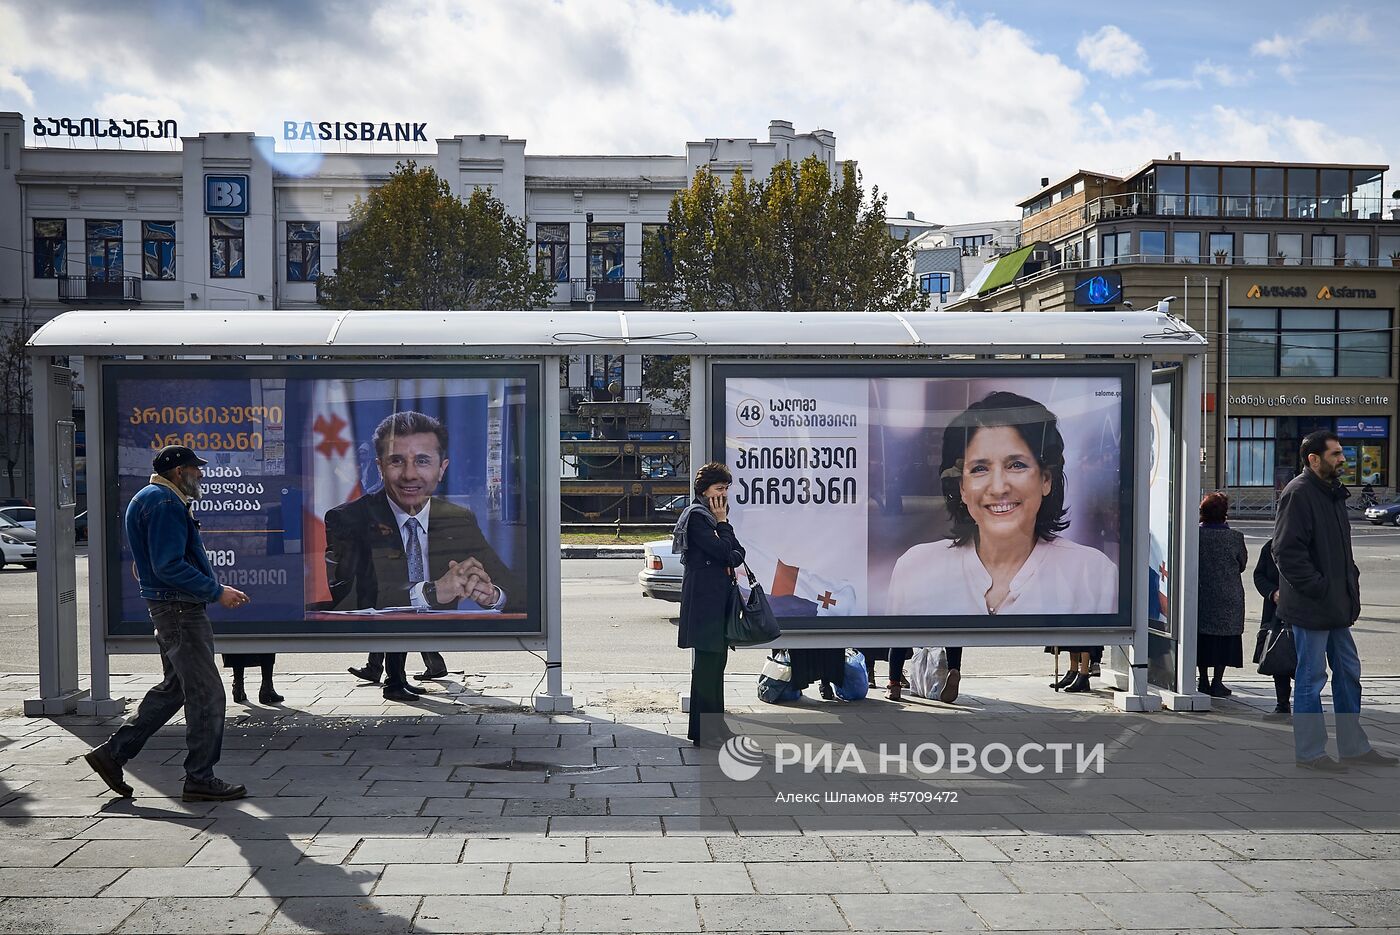  Предвыборная агитация на улицах Тбилиси